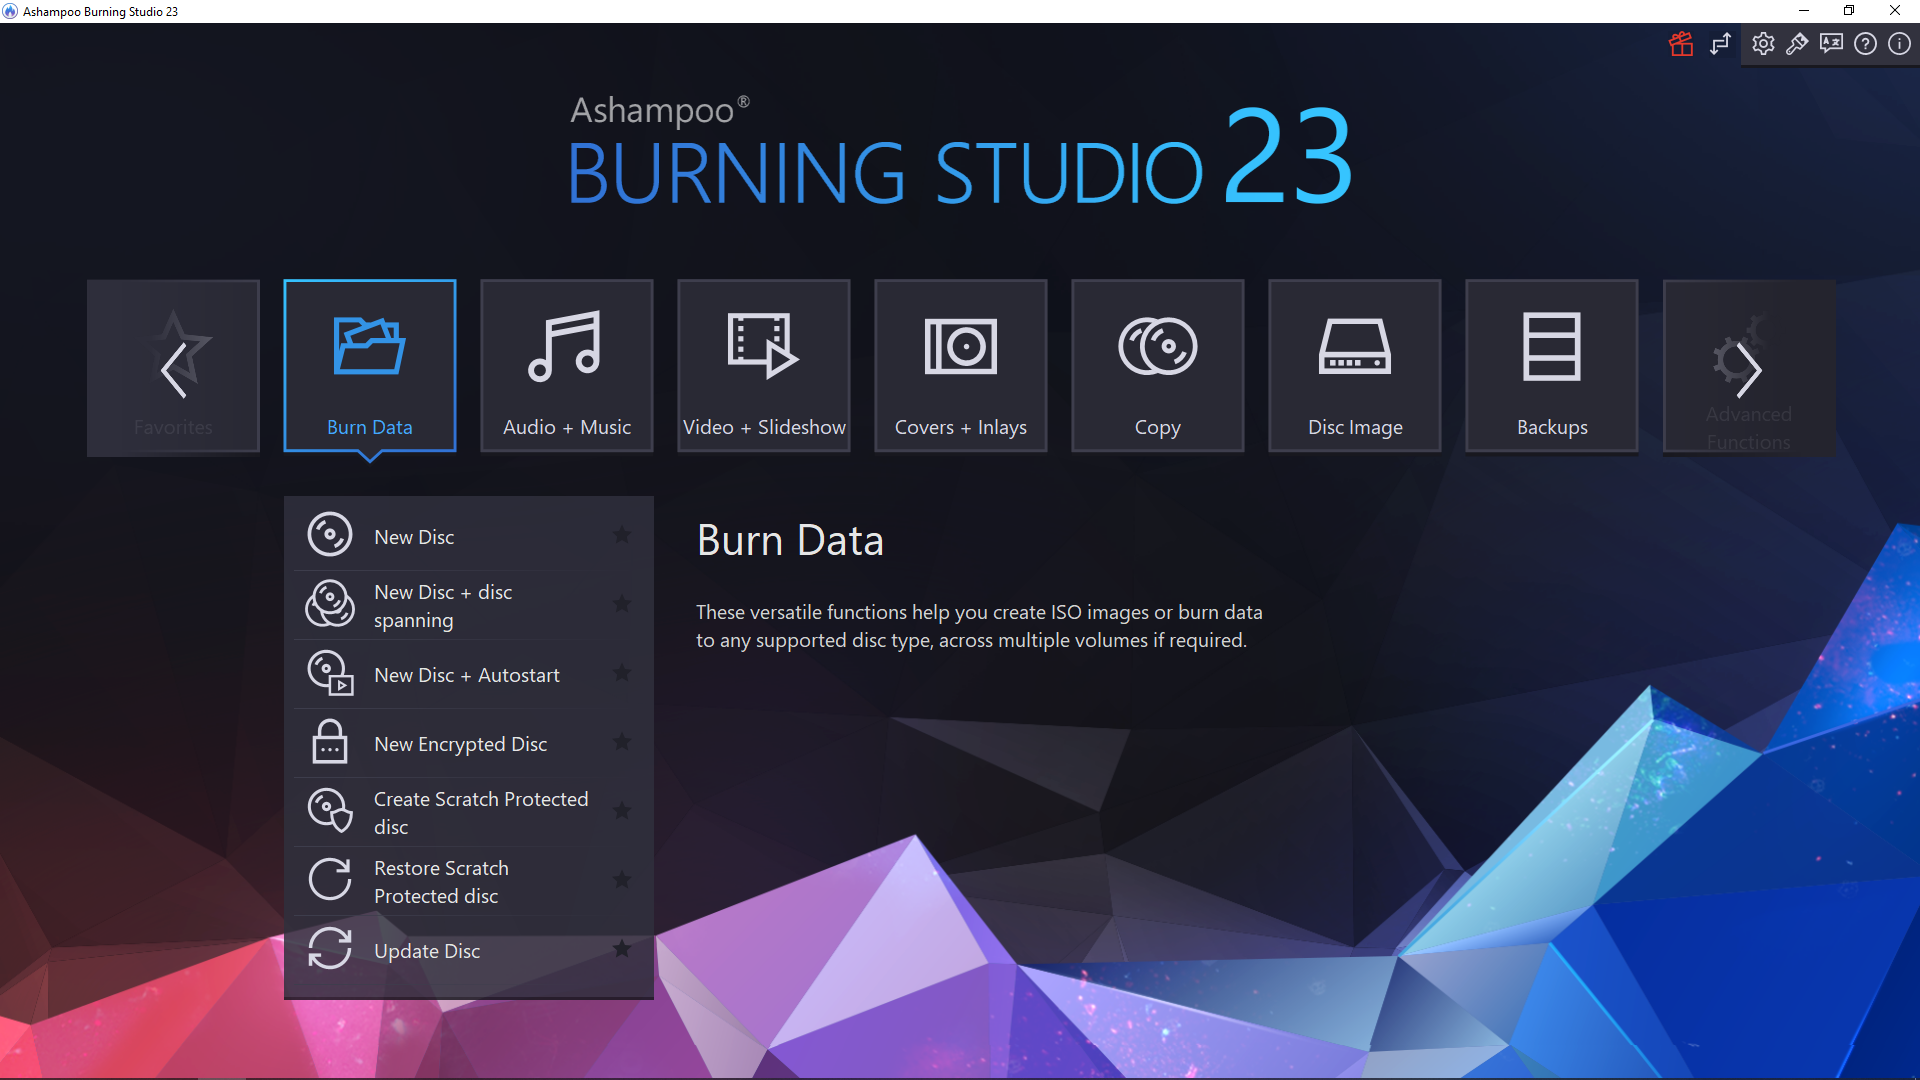 Ashampoo - Burning Studio 23 - main dark